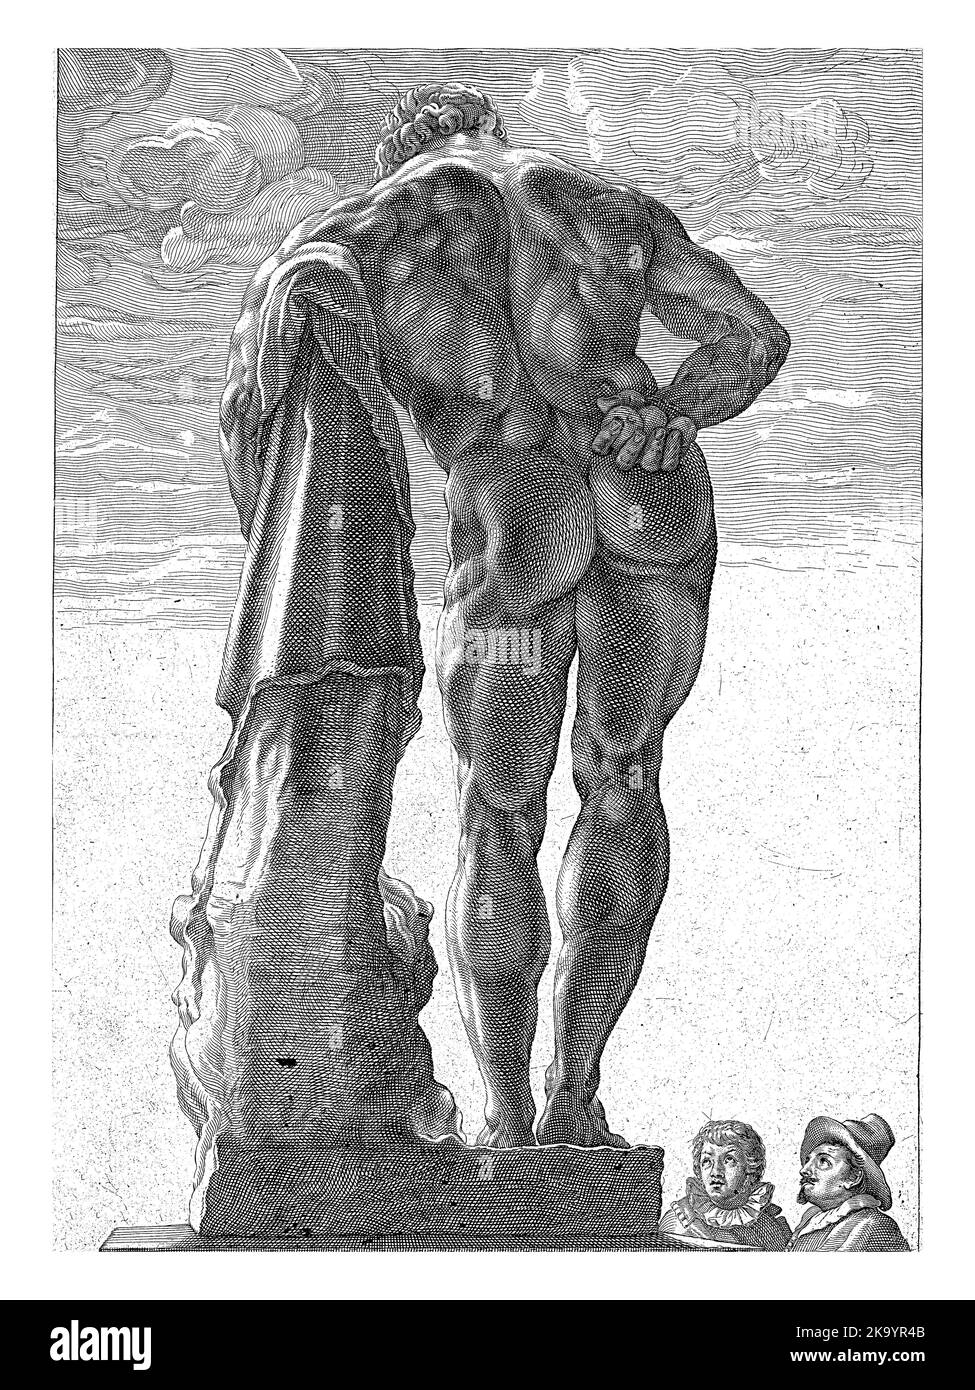 Eine große Statue des Herkules, von hinten gesehen, lehnt sich an seinen Knüppel. Bis 1787 stand diese Statue im Palazzo Farnese, daher der Name Hercules Farn Stockfoto